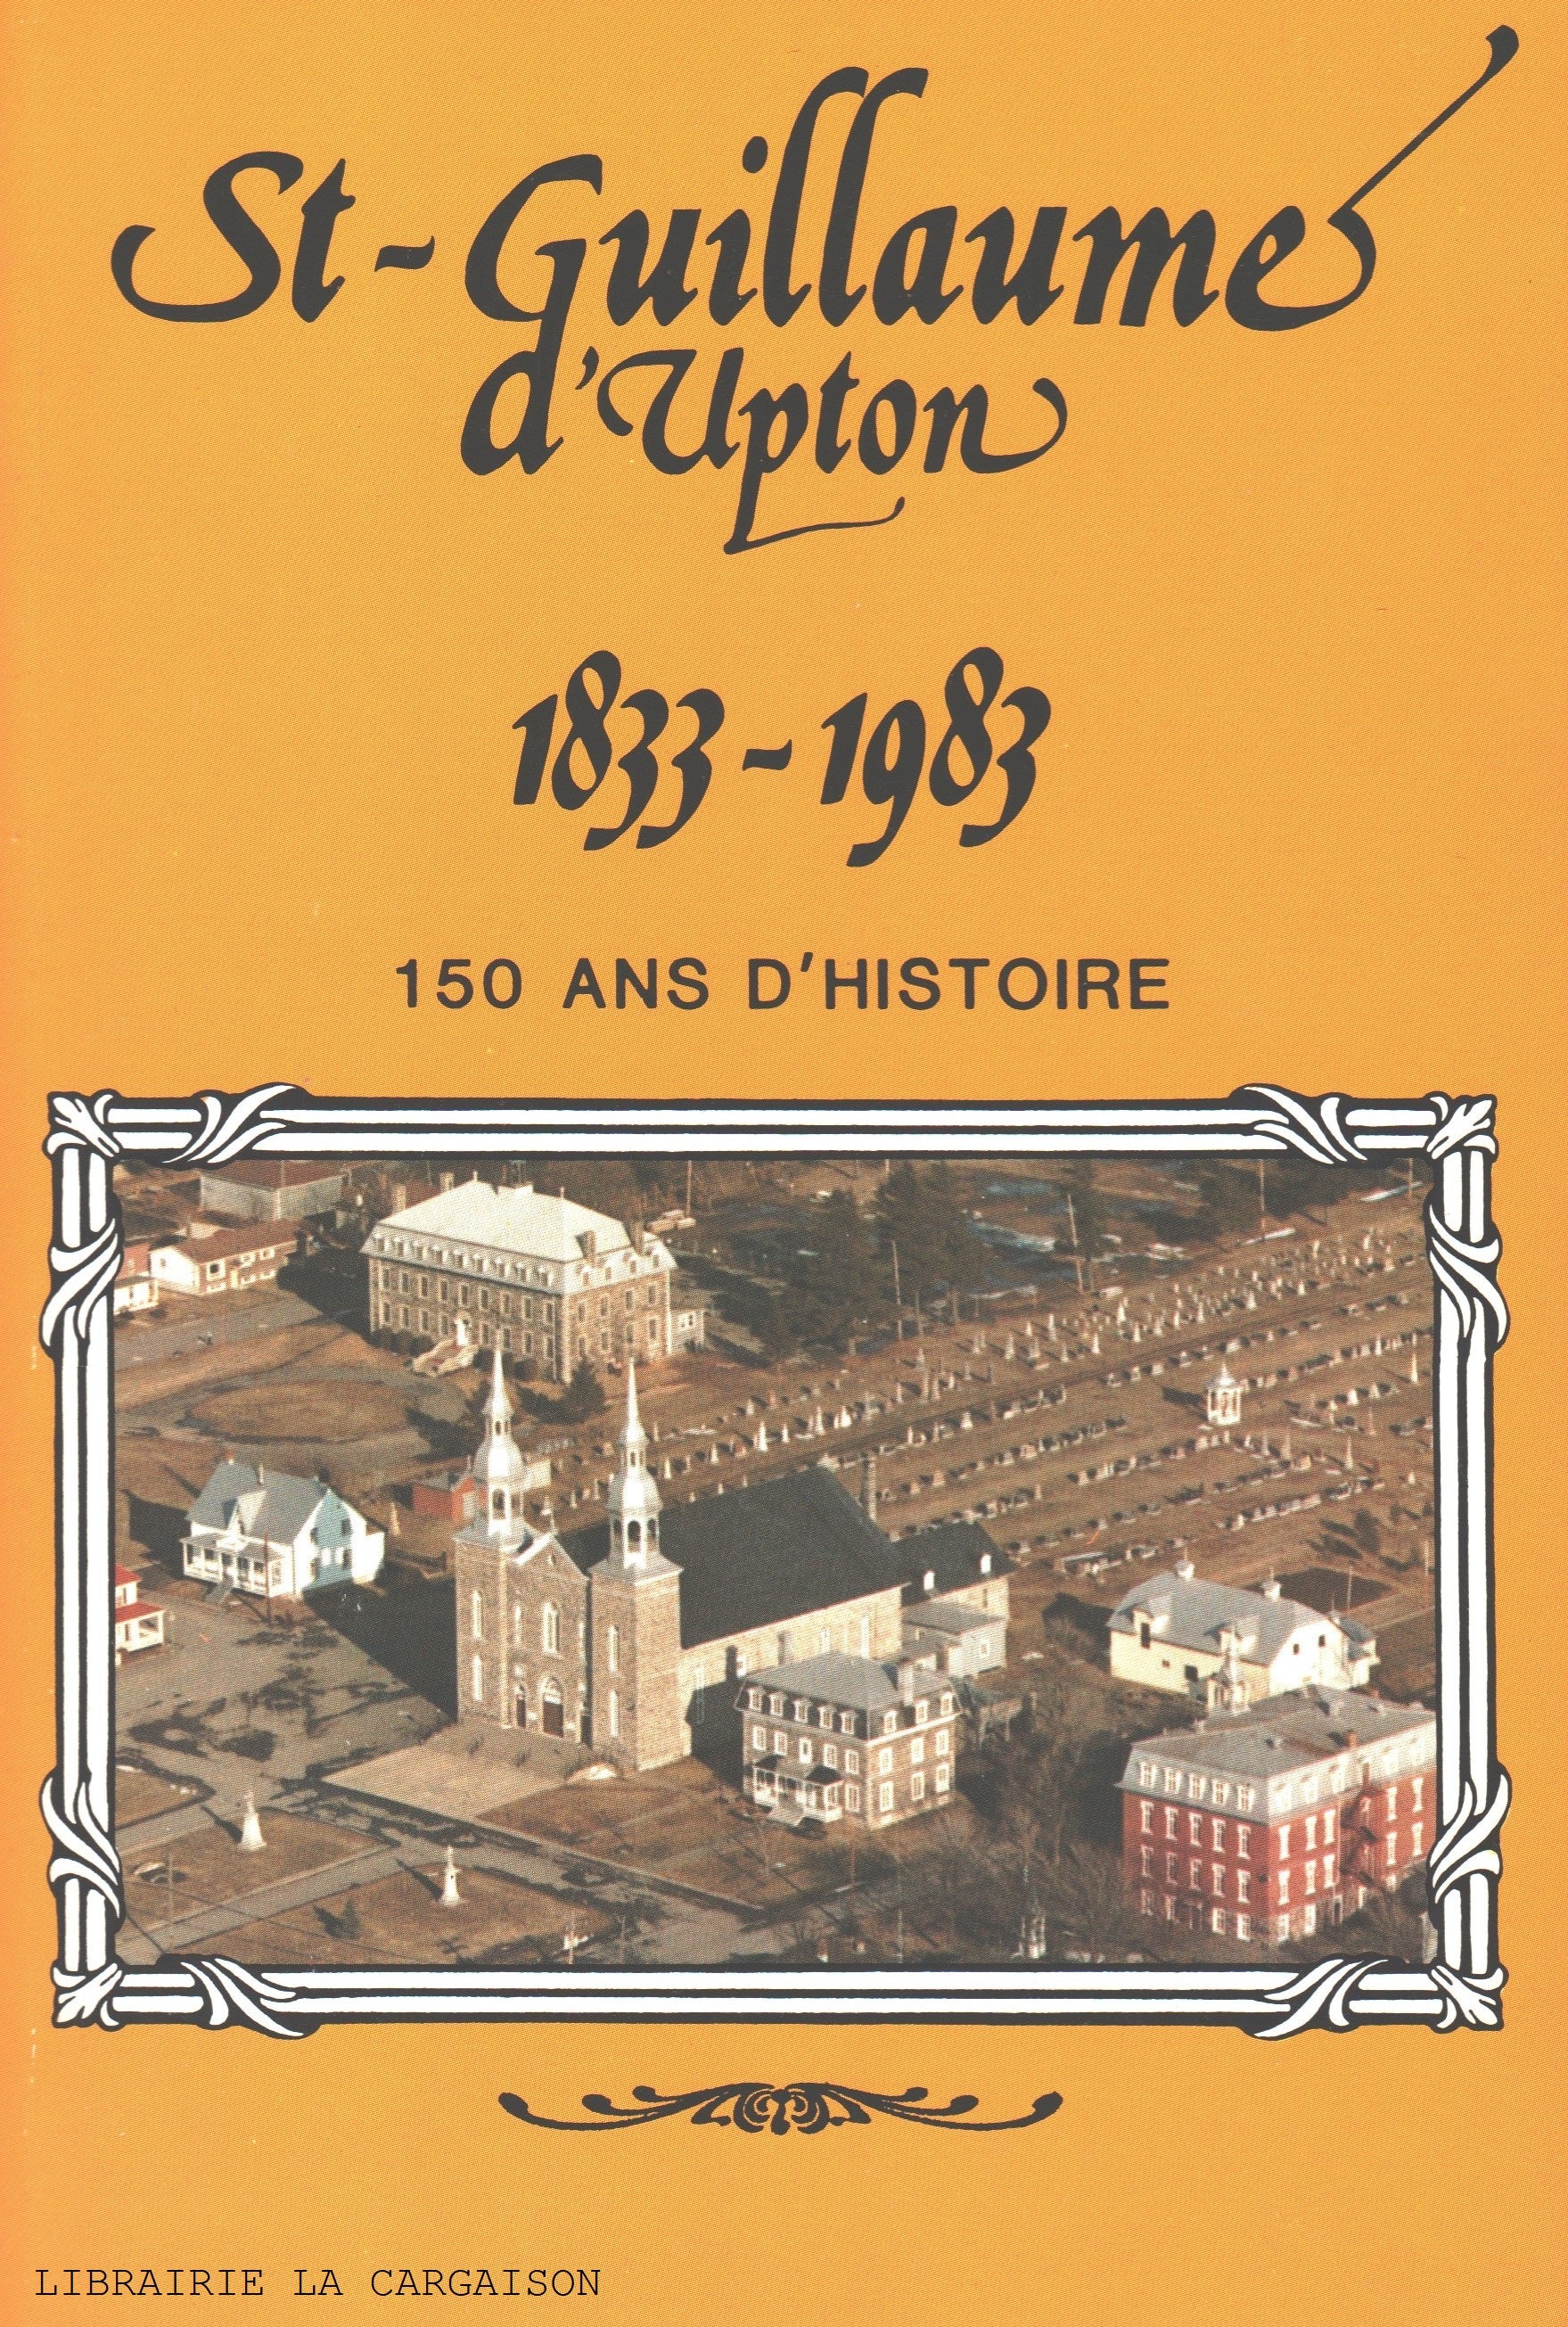 ST-GUILLAUME D'UPTON. St-Guillaume d'Upton 1833-1983 : 150 ans d'histoire